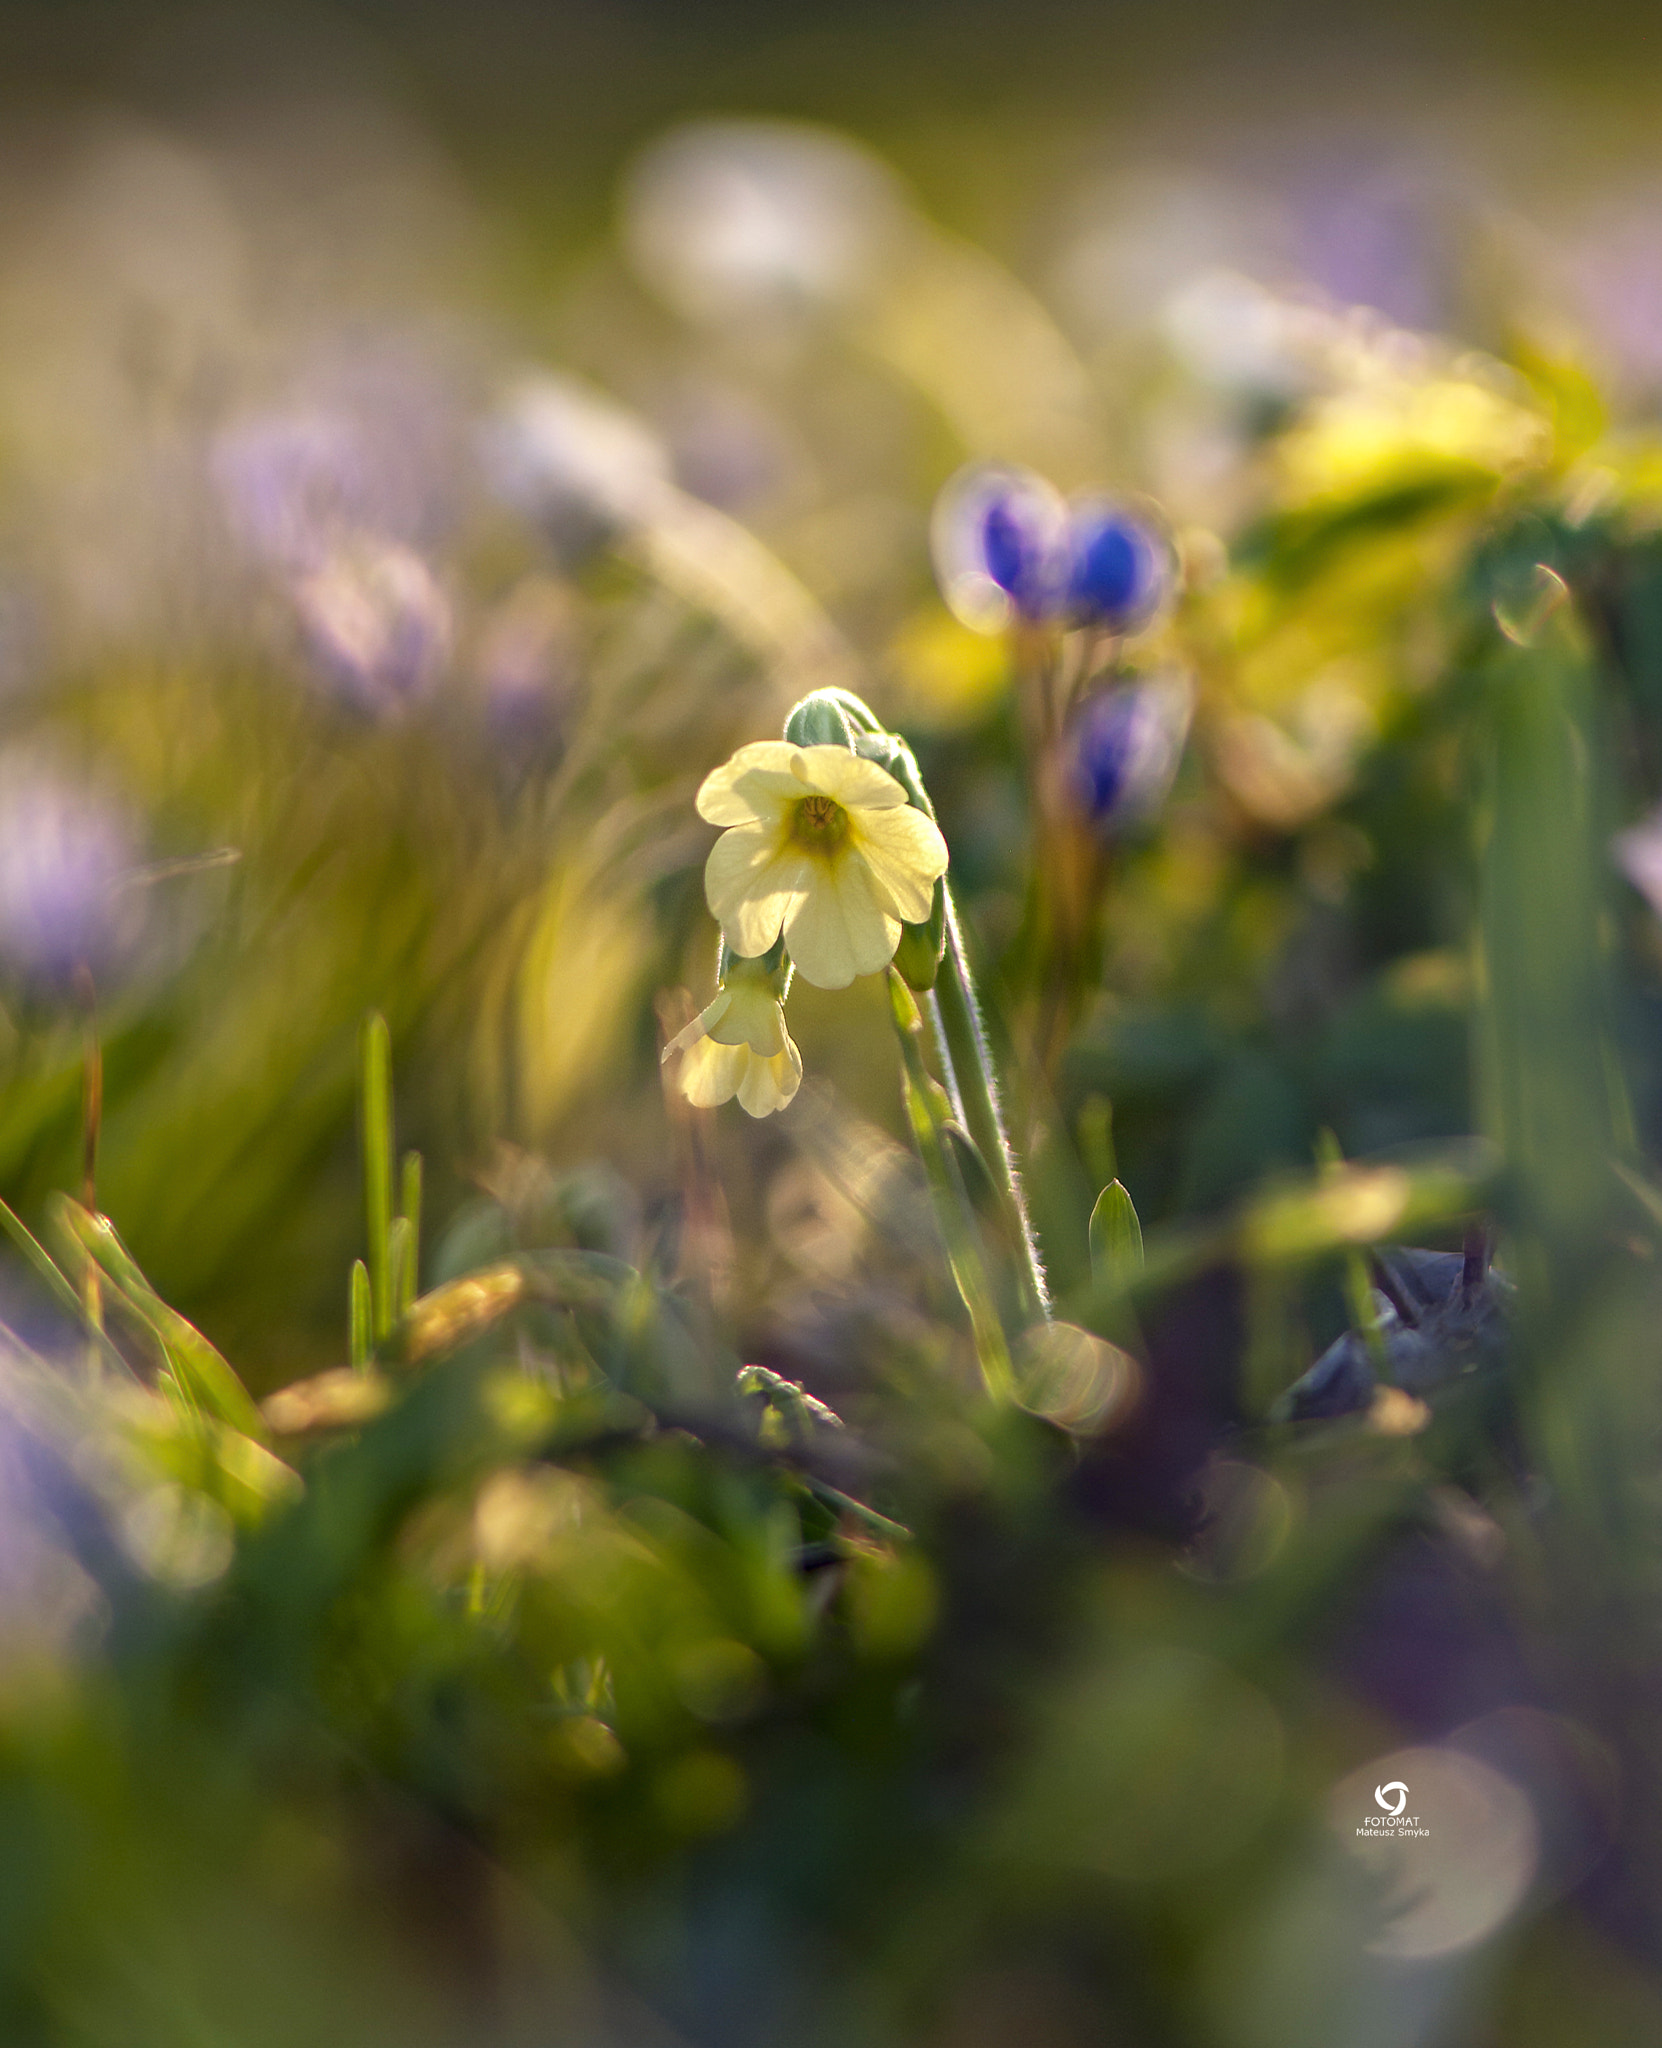 A Series Lens sample photo. Wiosna, spring, poland photography